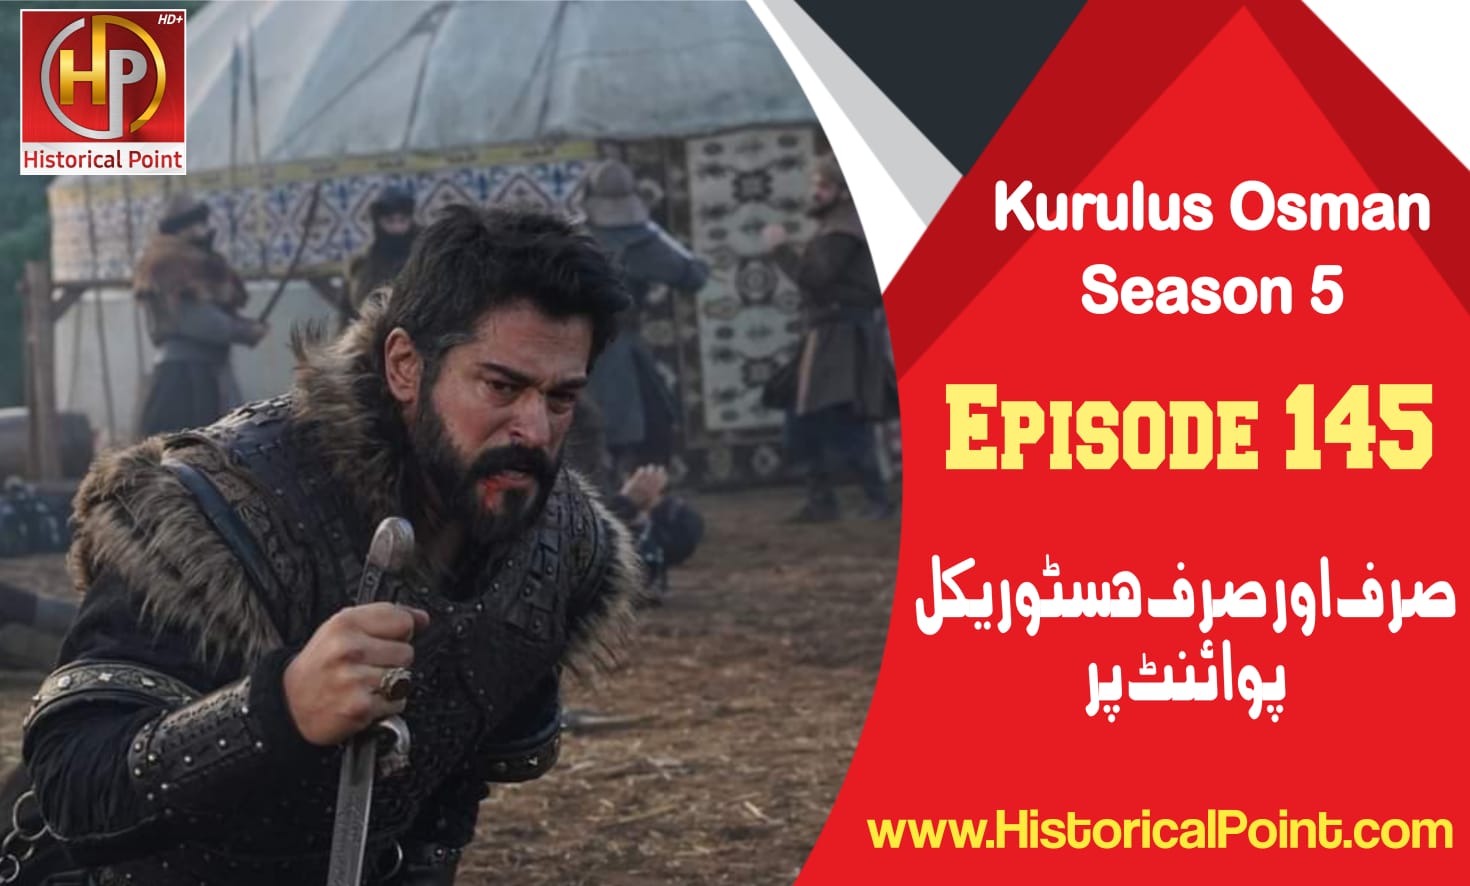 Kurulus Osman Episode 145 in Urdu Subtitles Free - Historical Point